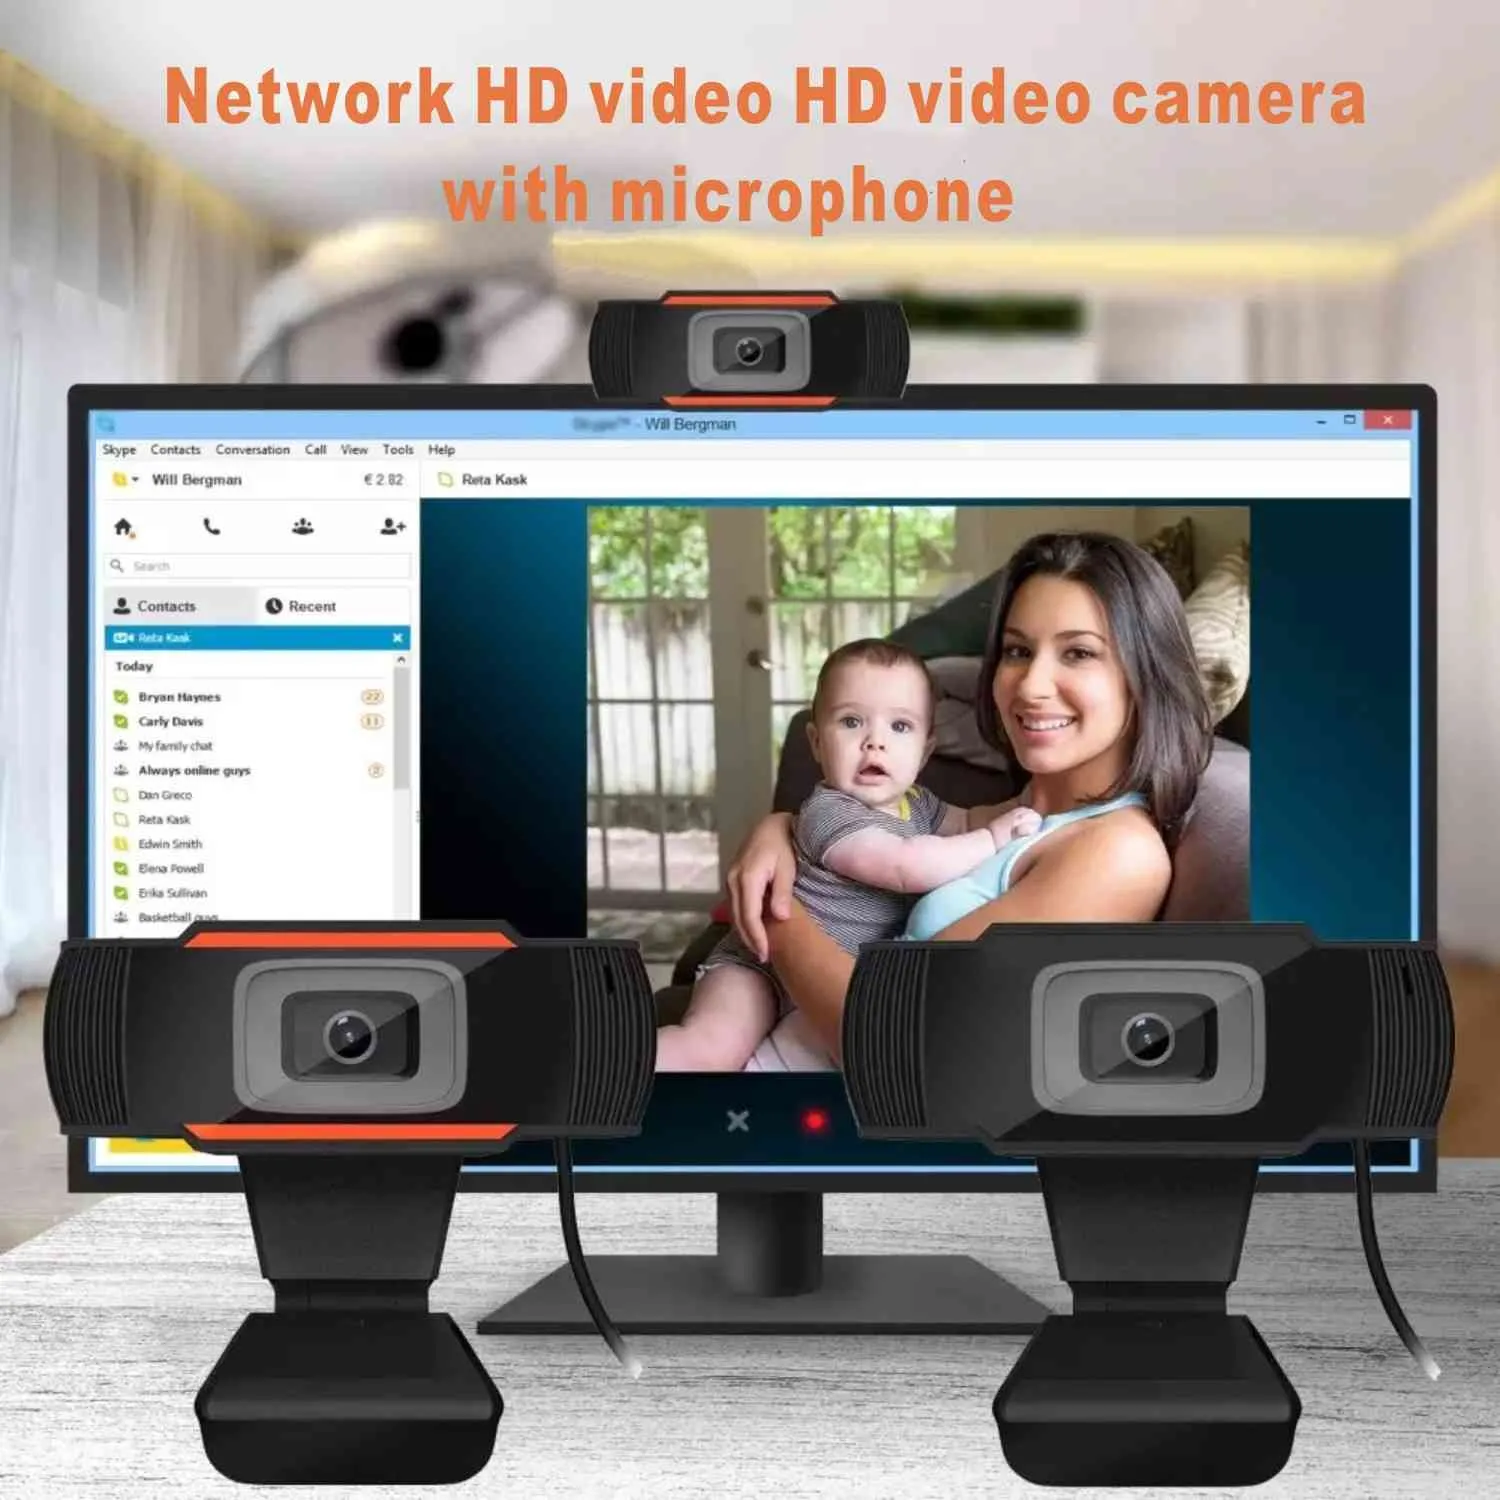 Webcam HD 1080P 720P USB caméra Web PC ordinateur portable bureau diffusion en direct YouTube Microfone vidéo conférence travail Webcan